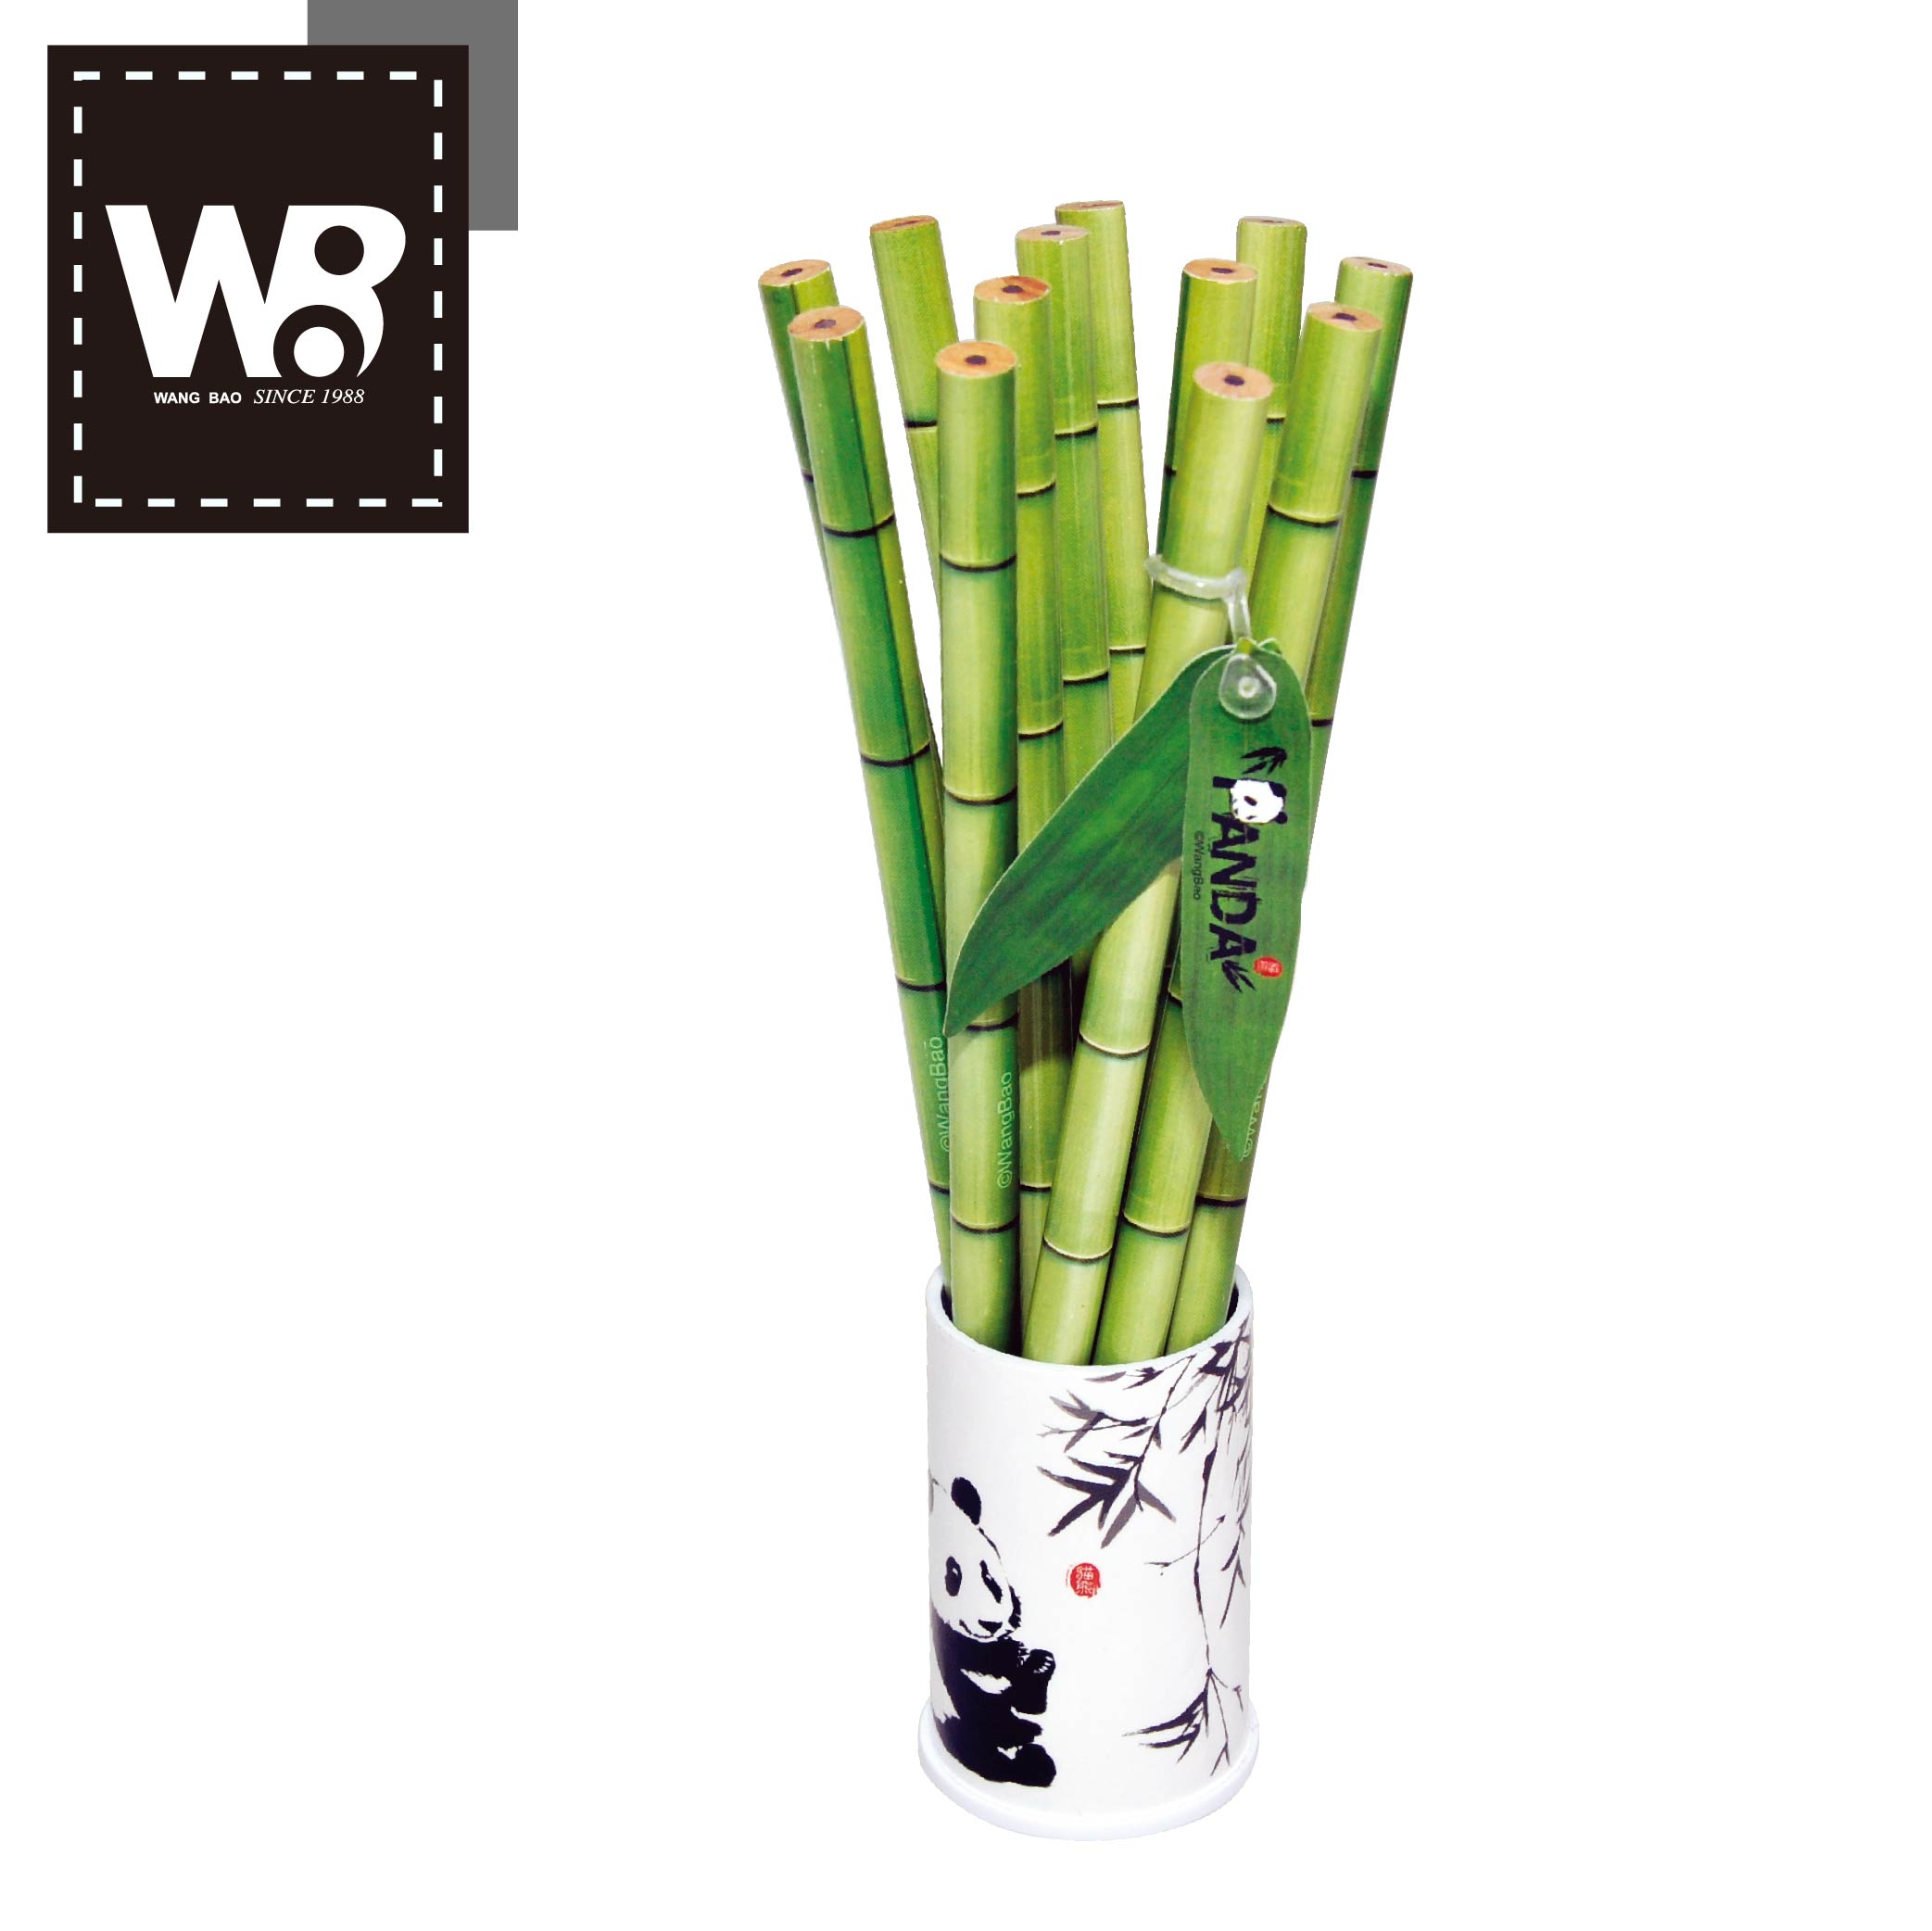 貓熊木頭竹子鉛筆12支入筆筒組